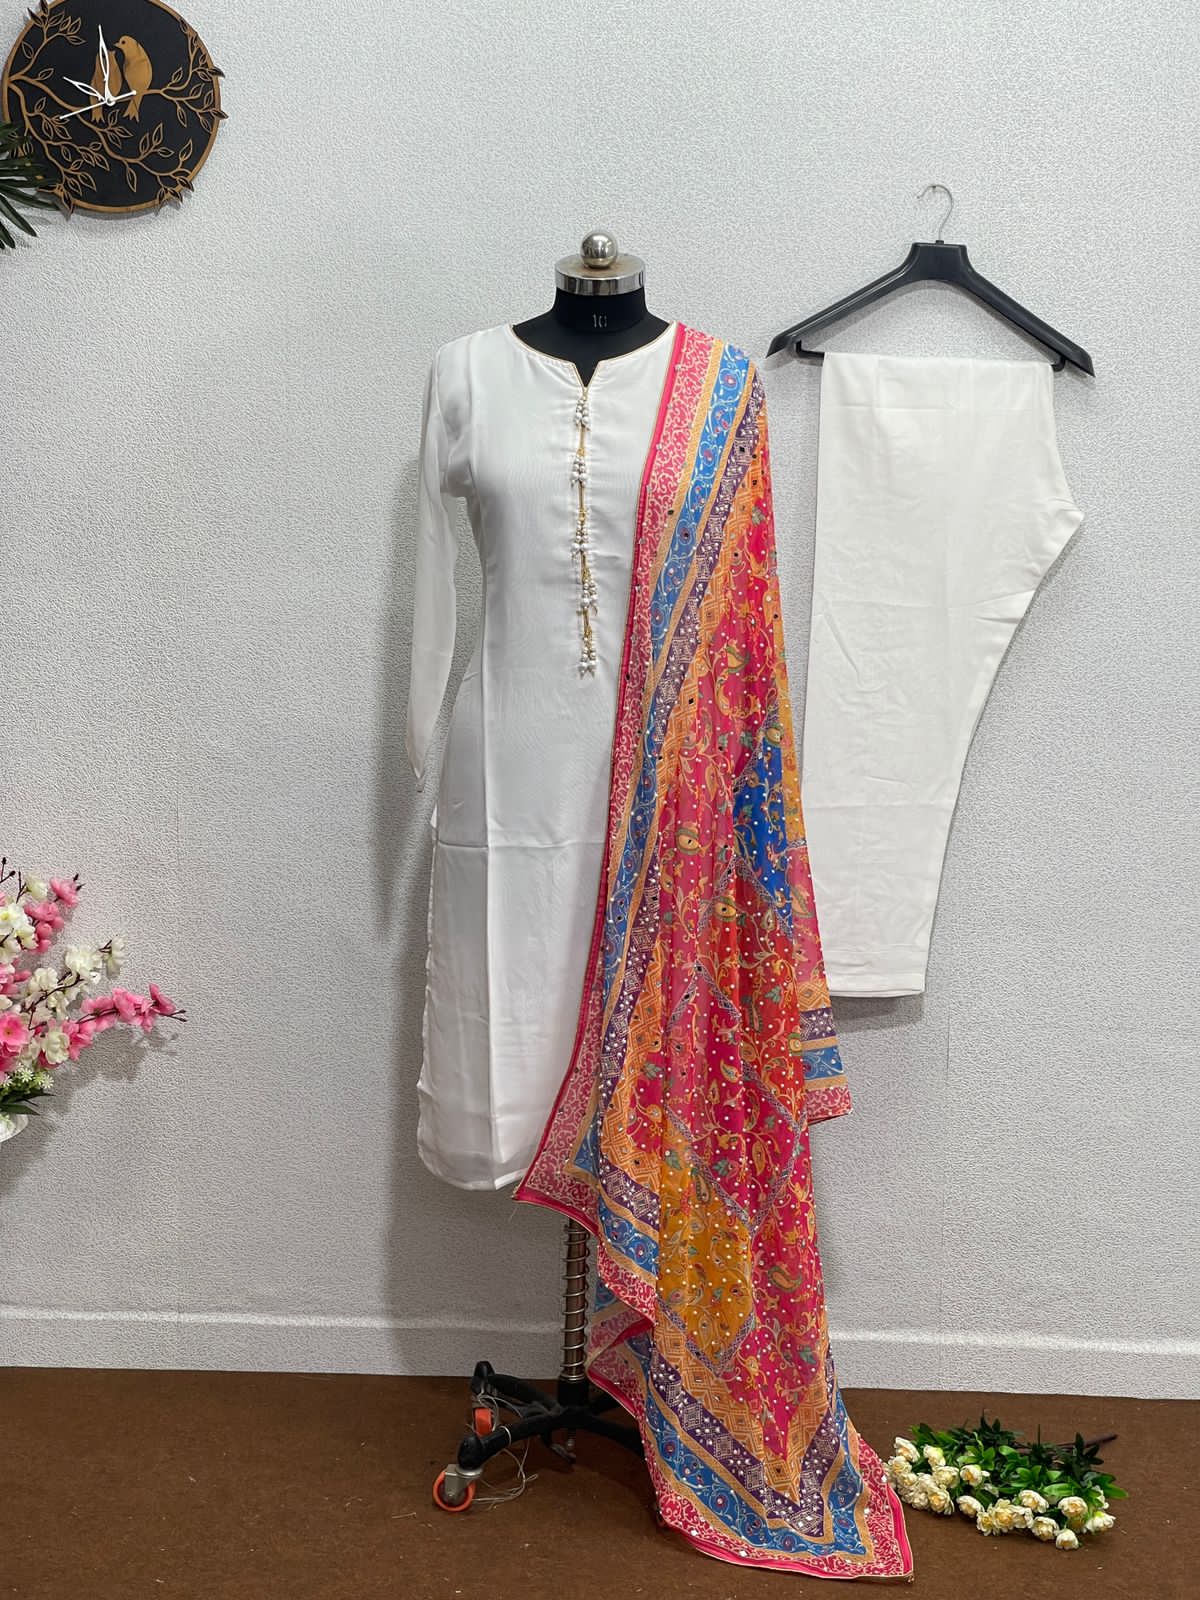 Glorious White Color Salwar Suit Multi Color Dupatta